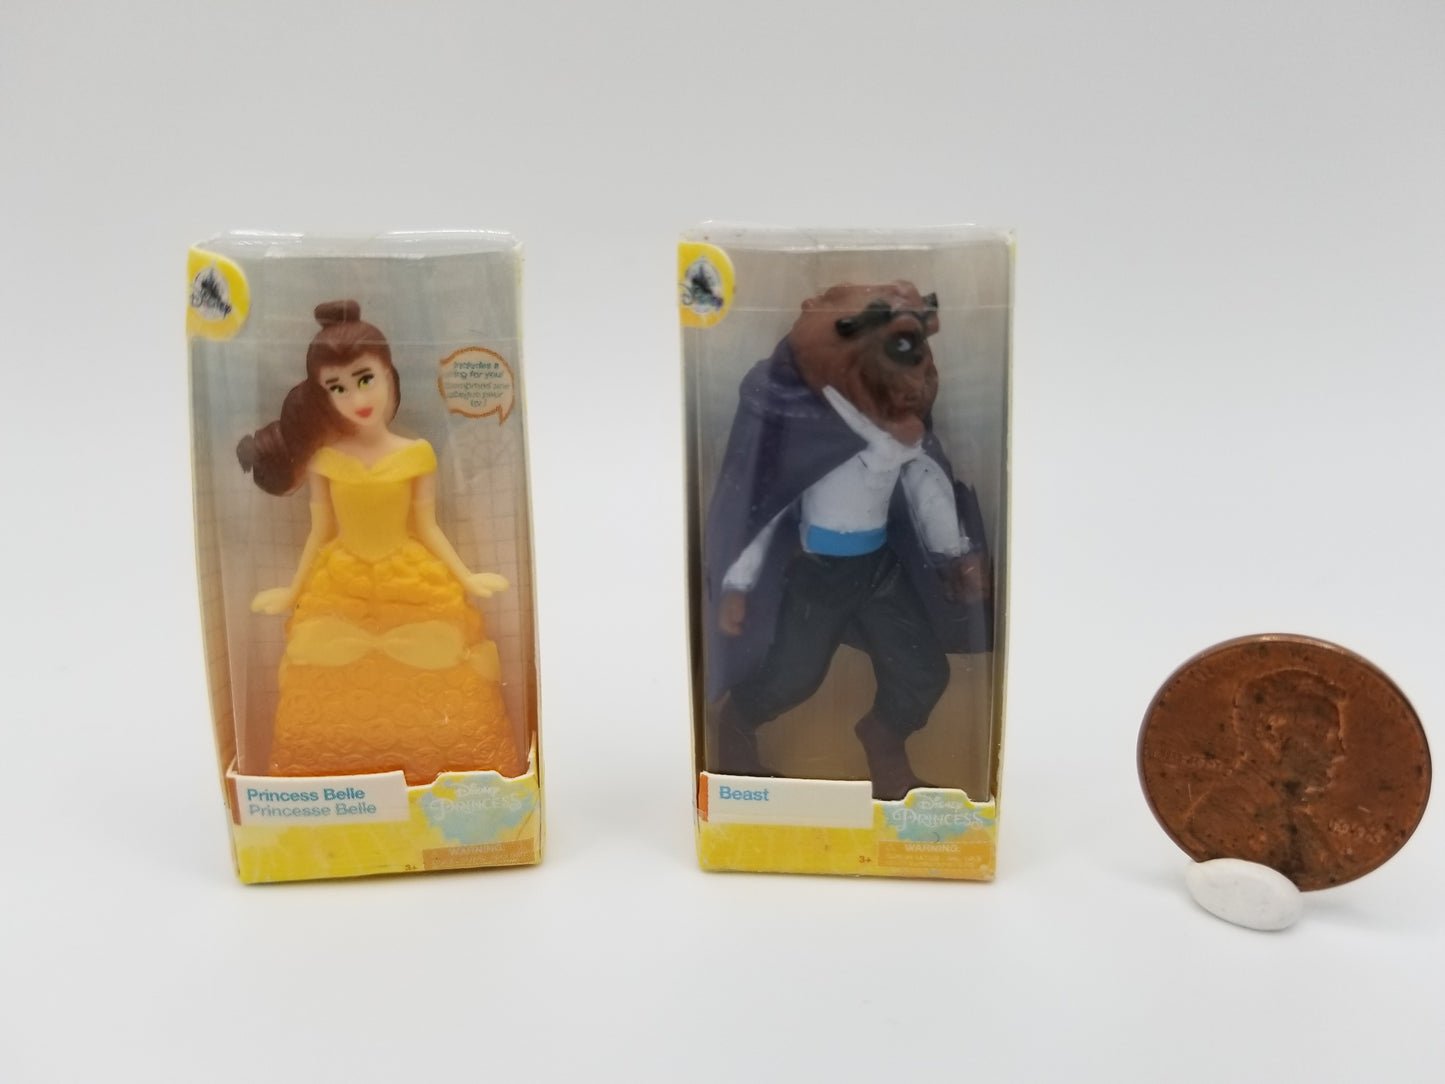 Toys - Princess figures